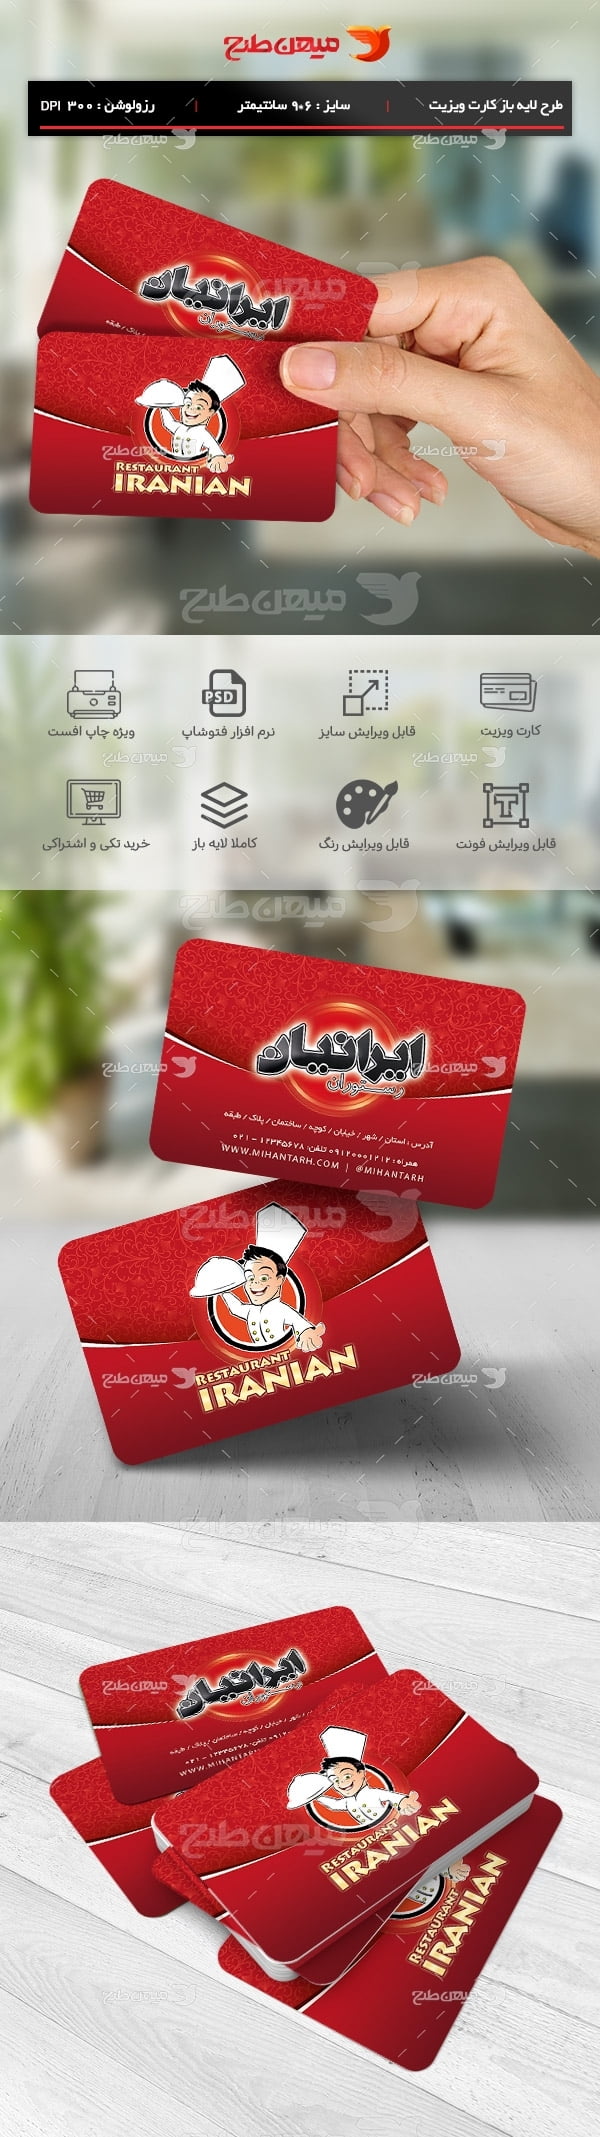 طرح لایه باز کارت ویزیت رستوران ایرانیان